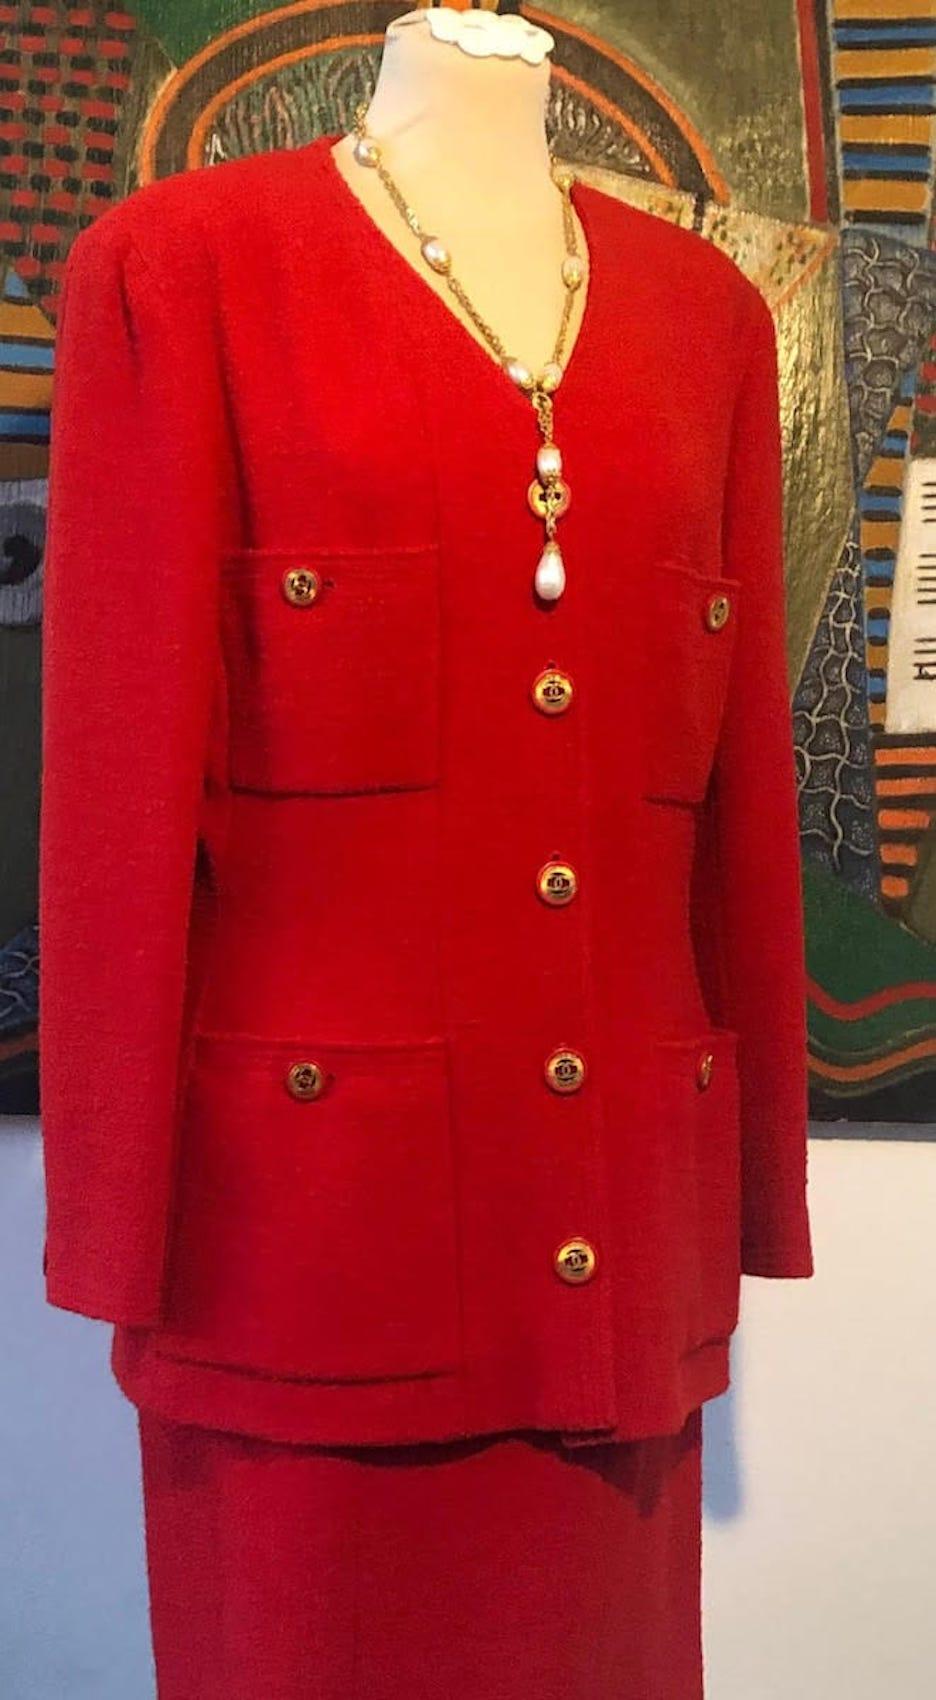 CHANEL 1990s CC-Knöpfe Einreihige Jacke Anzug Rot Tweed Bouclé
Ein klassischer, seltener roter CHANEL-Bouclé-Rockanzug aus der Collection'S der 1990er Jahre mit wunderschönen Knöpfen (die Knöpfe sehen aus wie Chanel-Ohrringe). Einreihige Jacke mit